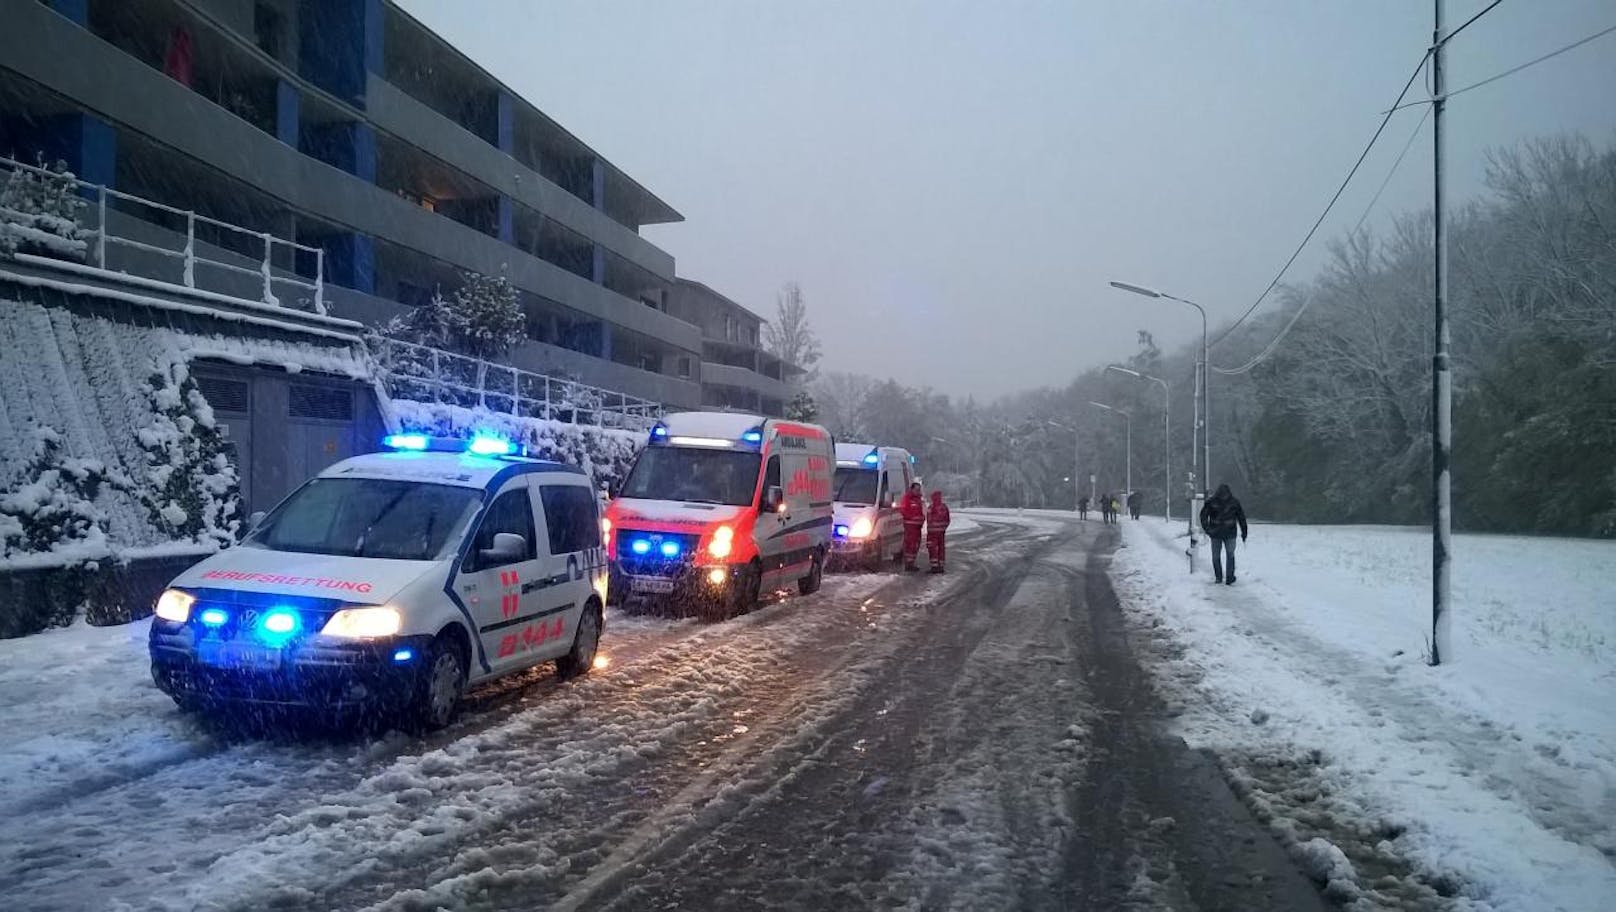 Die Berufsrettung Wien war zur Versorgung und Betreuung der Fahrzeuginsassen mit Teilen des Katastrophenzuges sowie mehreren Rettungsteams vor Ort.